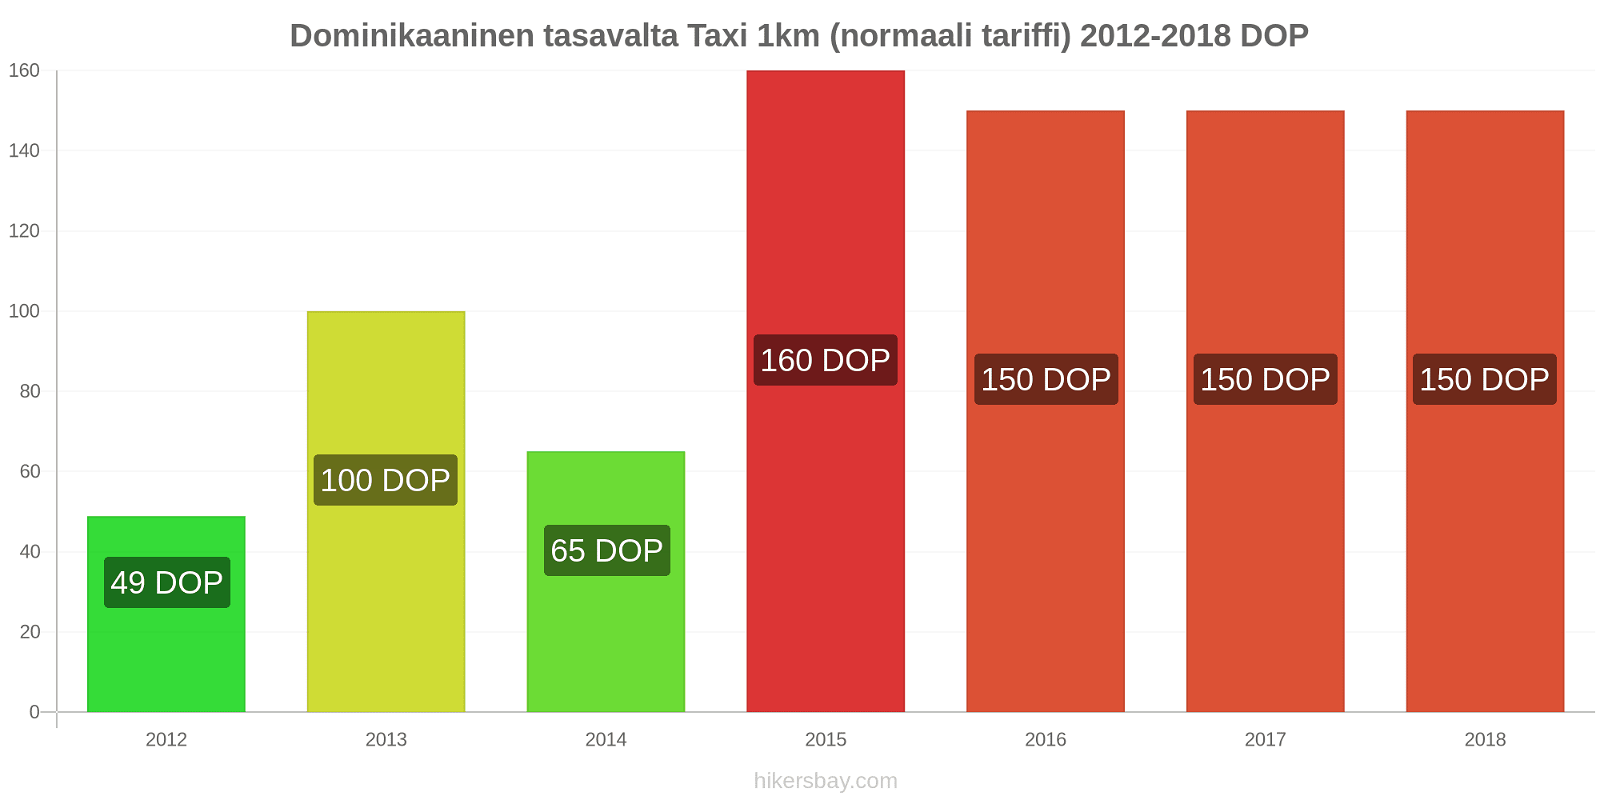 Dominikaaninen tasavalta hintojen muutokset Taxi 1km (normaali tariffi) hikersbay.com